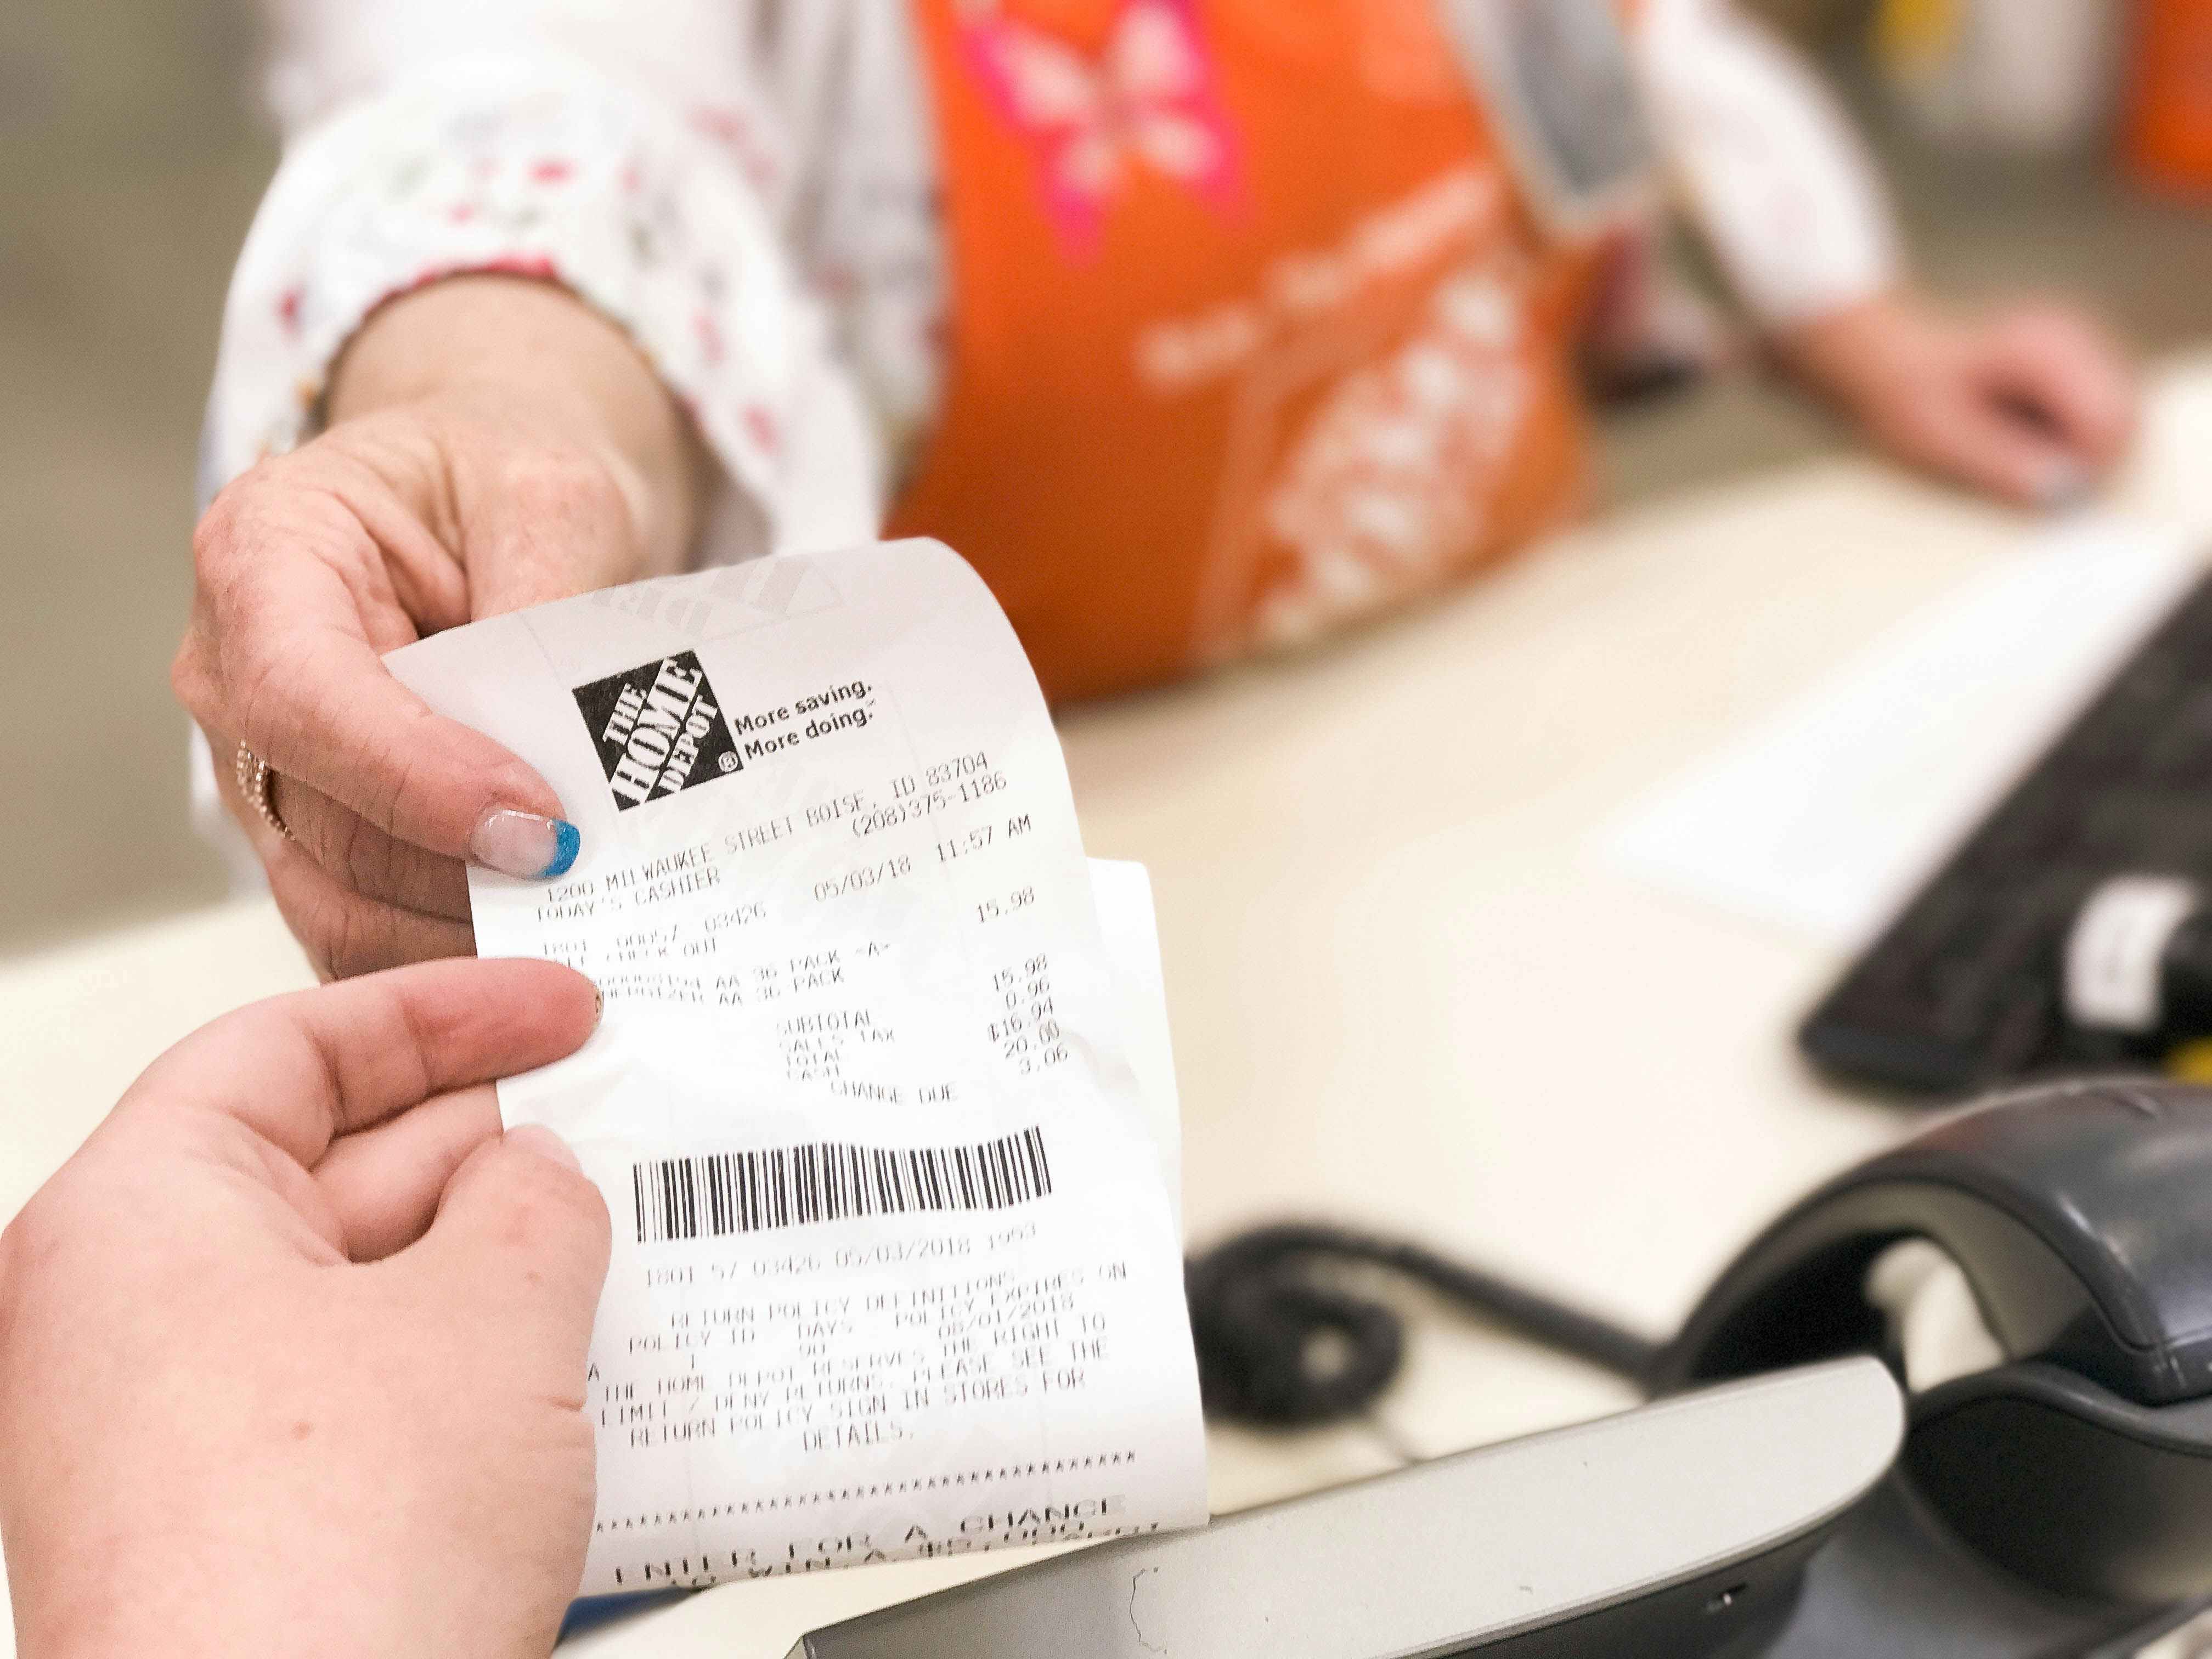 A person handing a customer service agent a receipt.